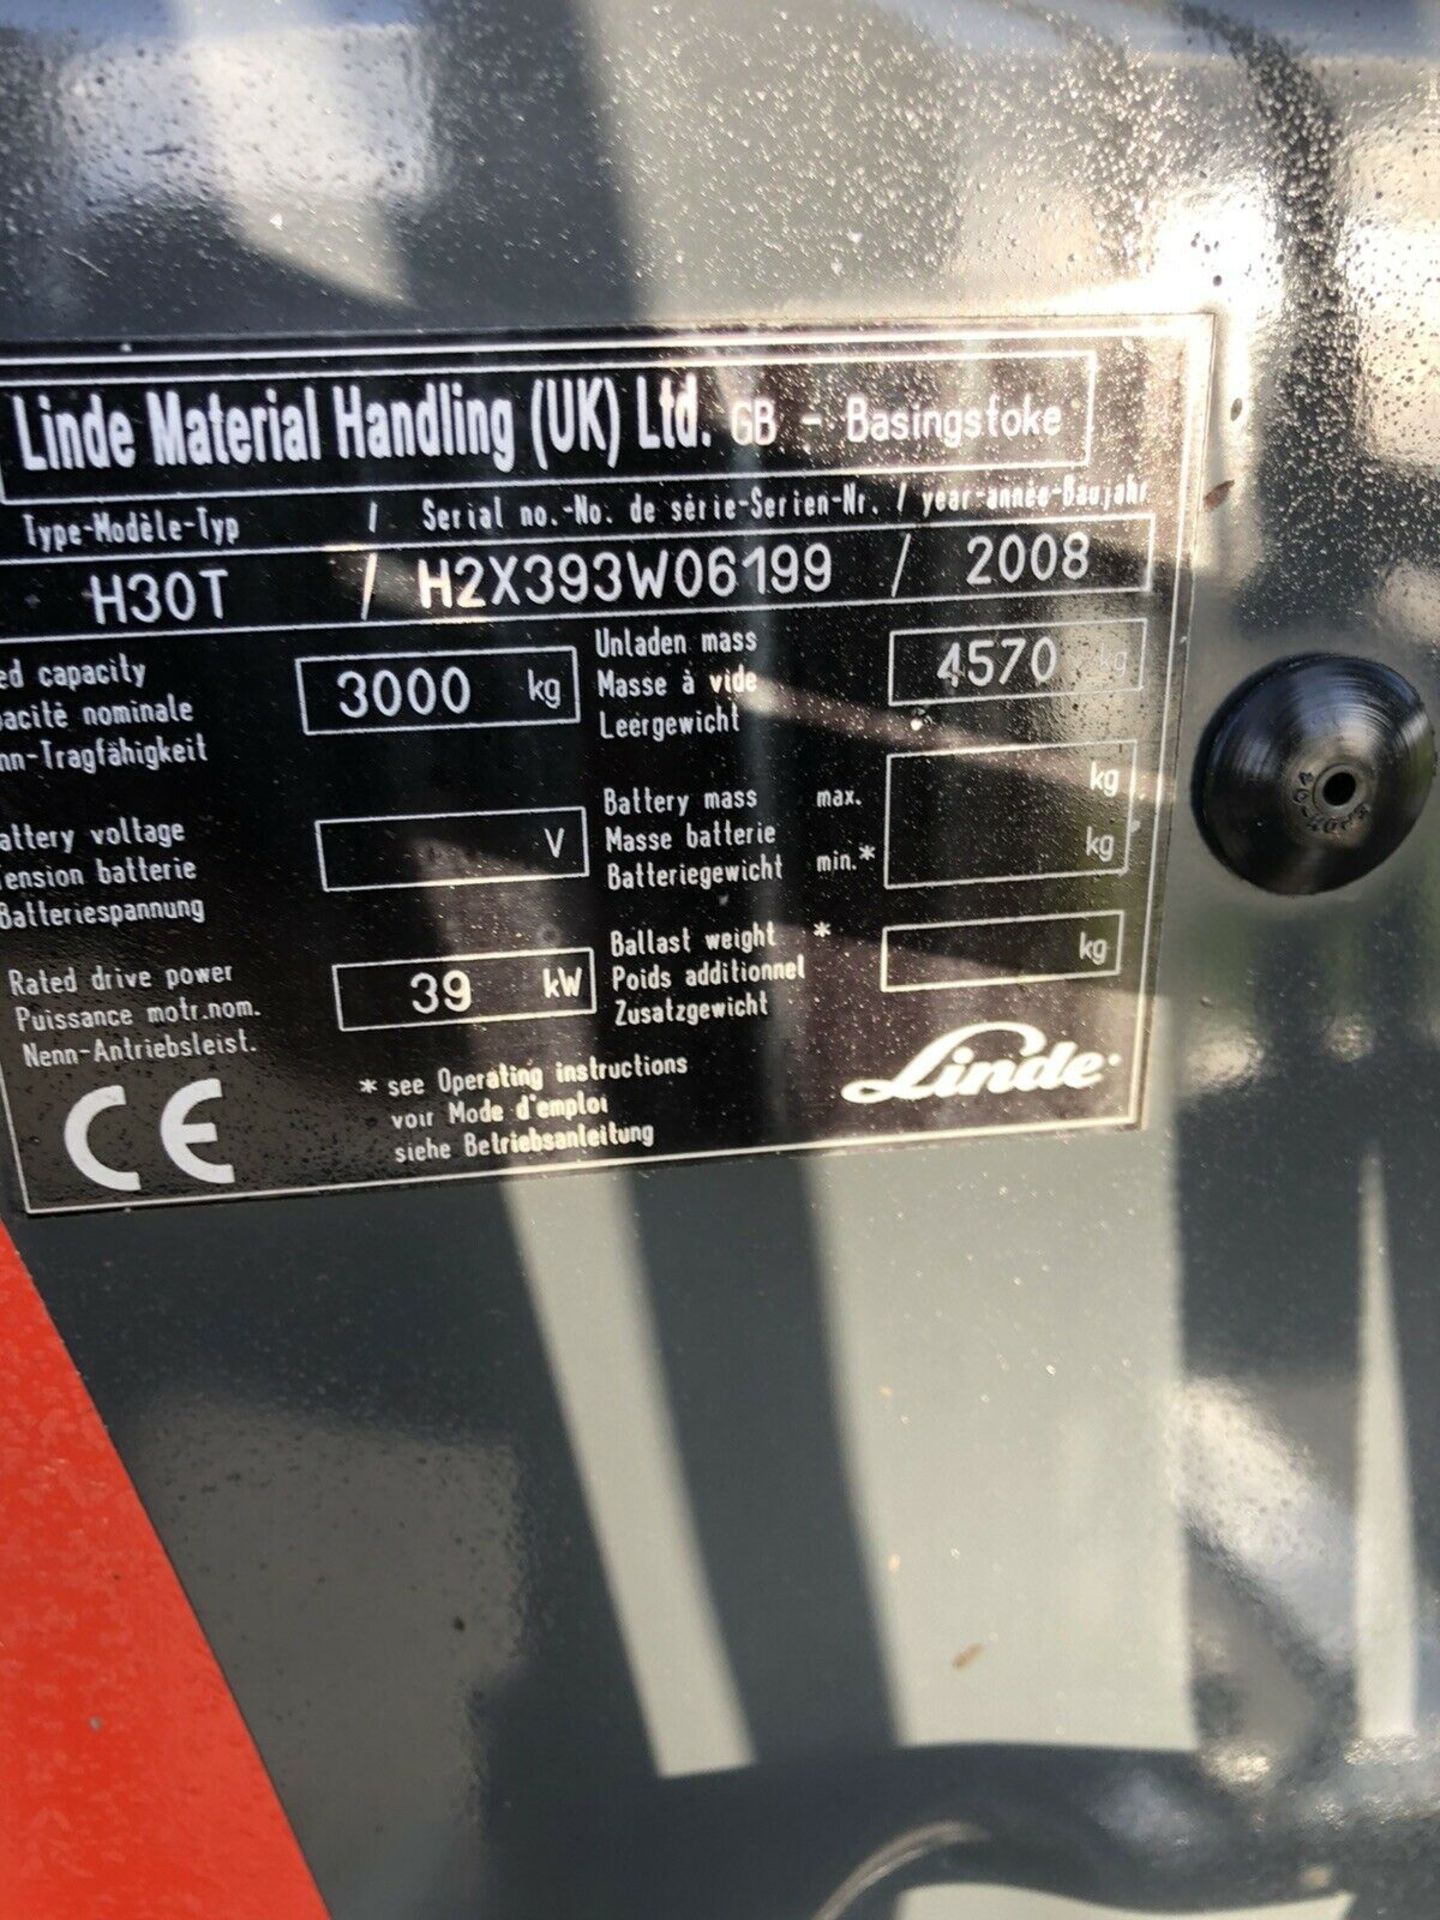 Linde H30t gas Forklift - Image 6 of 7